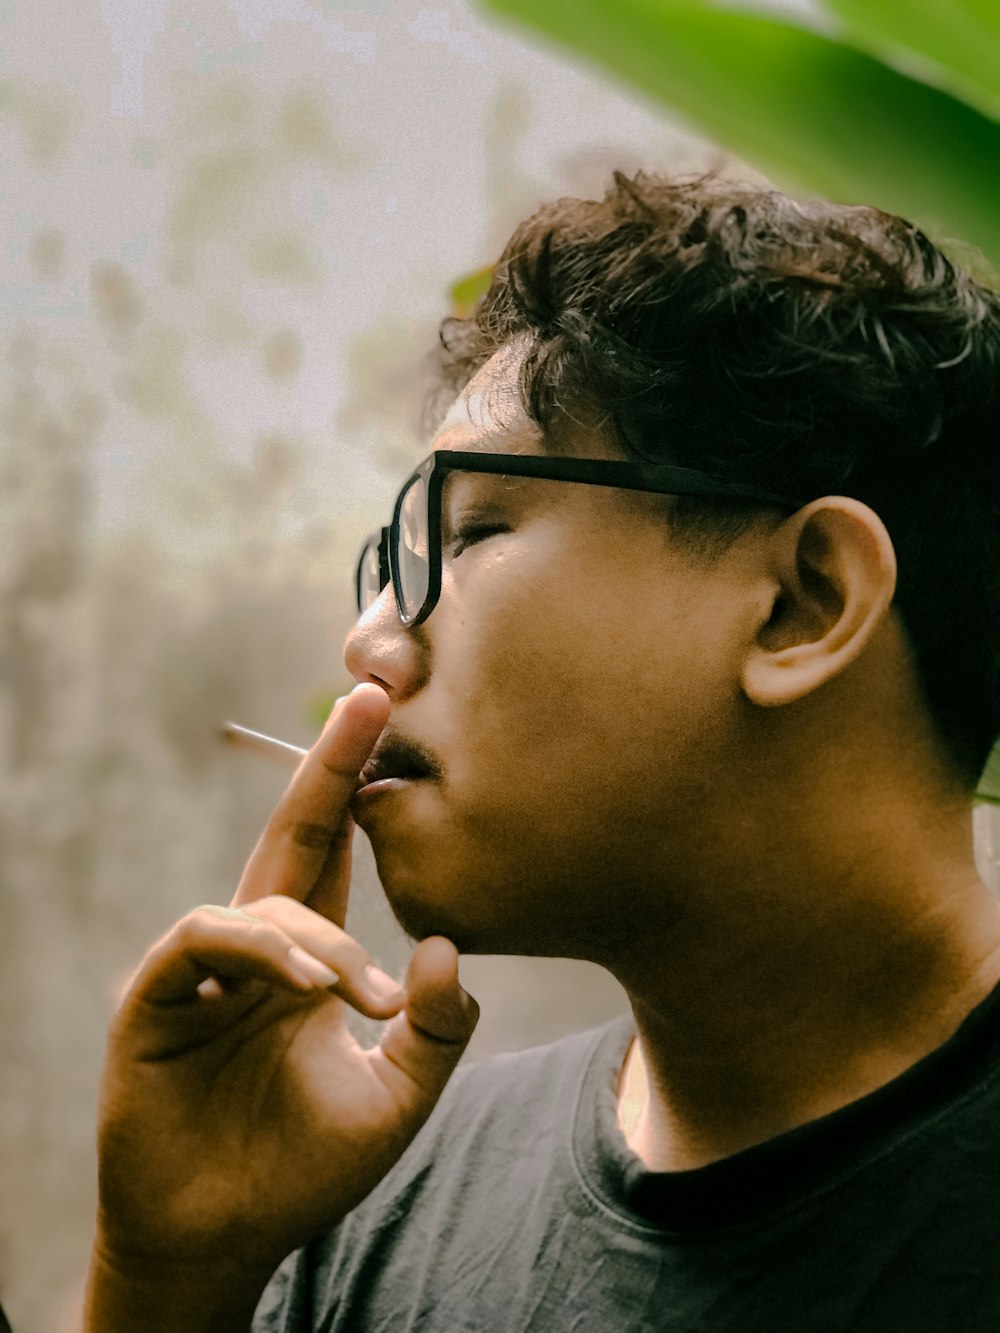 안경을 쓴 남자가 담배를 피우고 있다